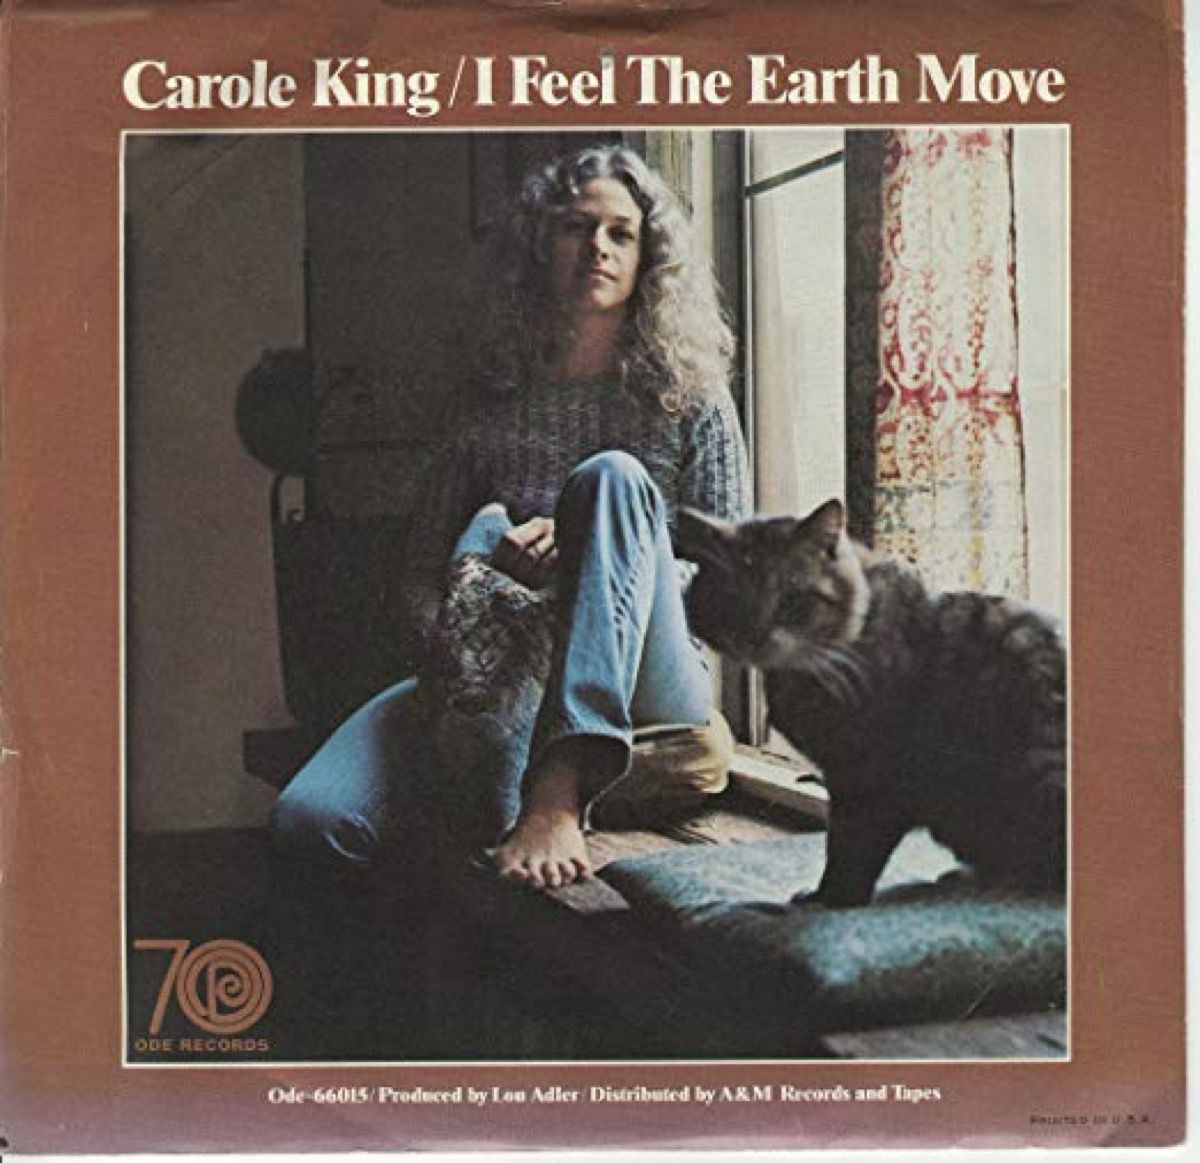 albumin kansi Carole Kingille, tunnen maan liikkuvan, kesän 1971 kappale